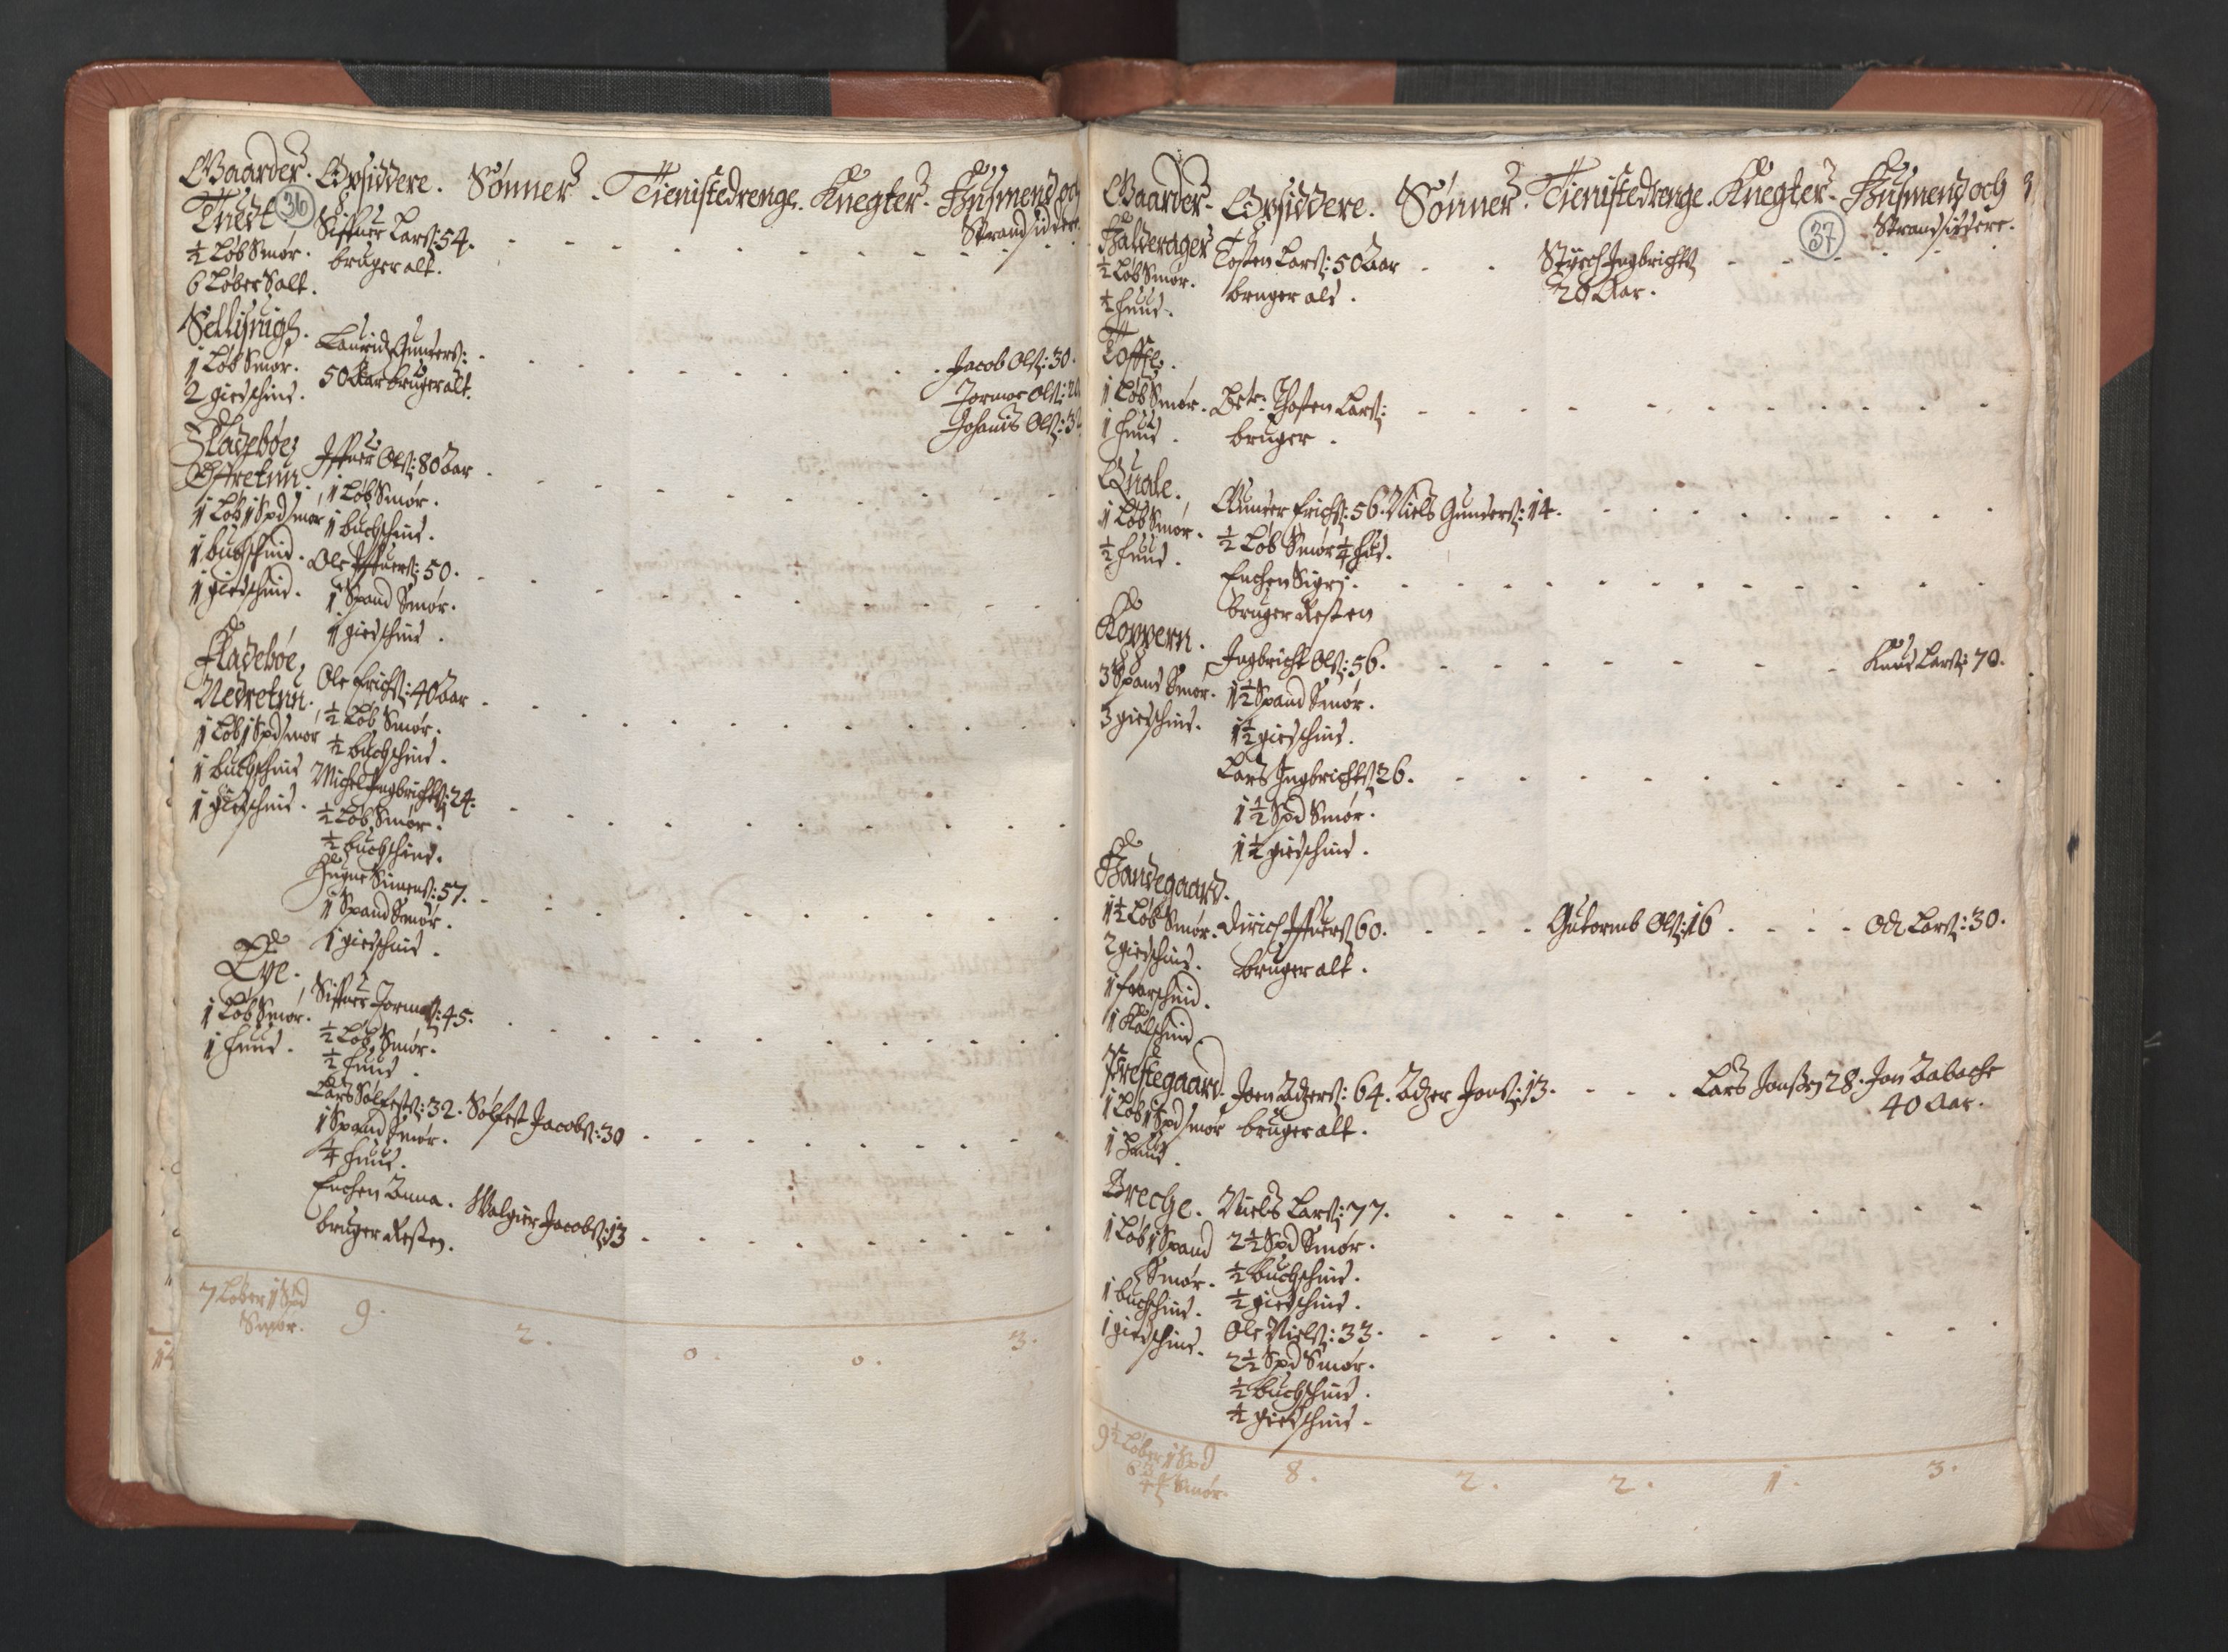 RA, Bailiff's Census 1664-1666, no. 14: Hardanger len, Ytre Sogn fogderi and Indre Sogn fogderi, 1664-1665, p. 36-37